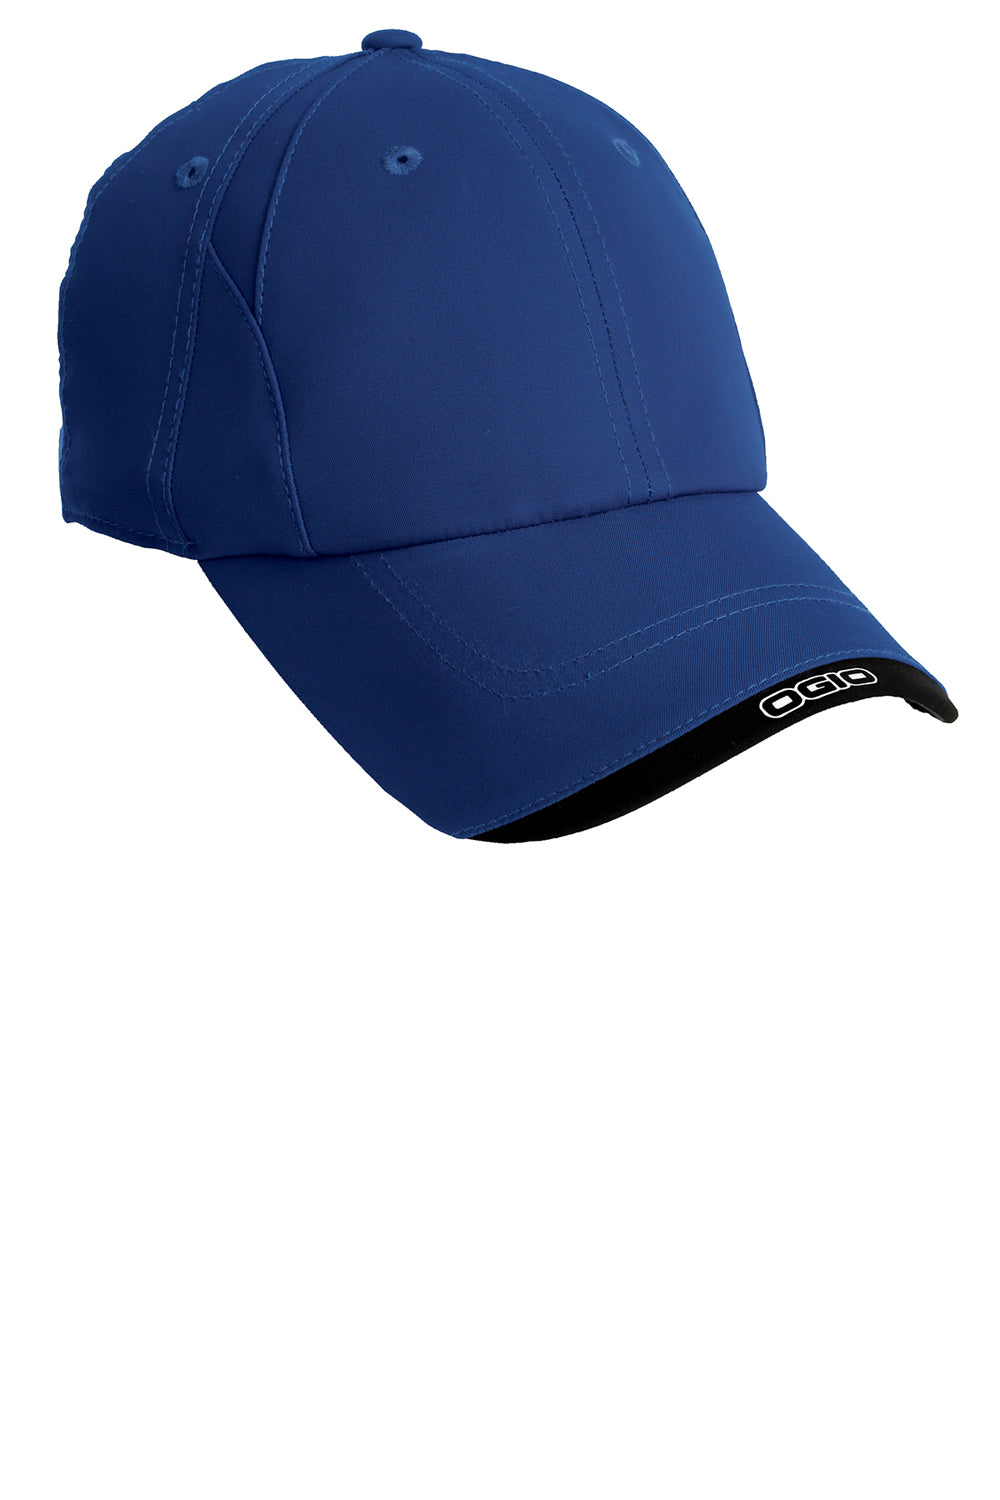 Ogio OG600 Mens Adjustable Hat Royal Blue/Black Front